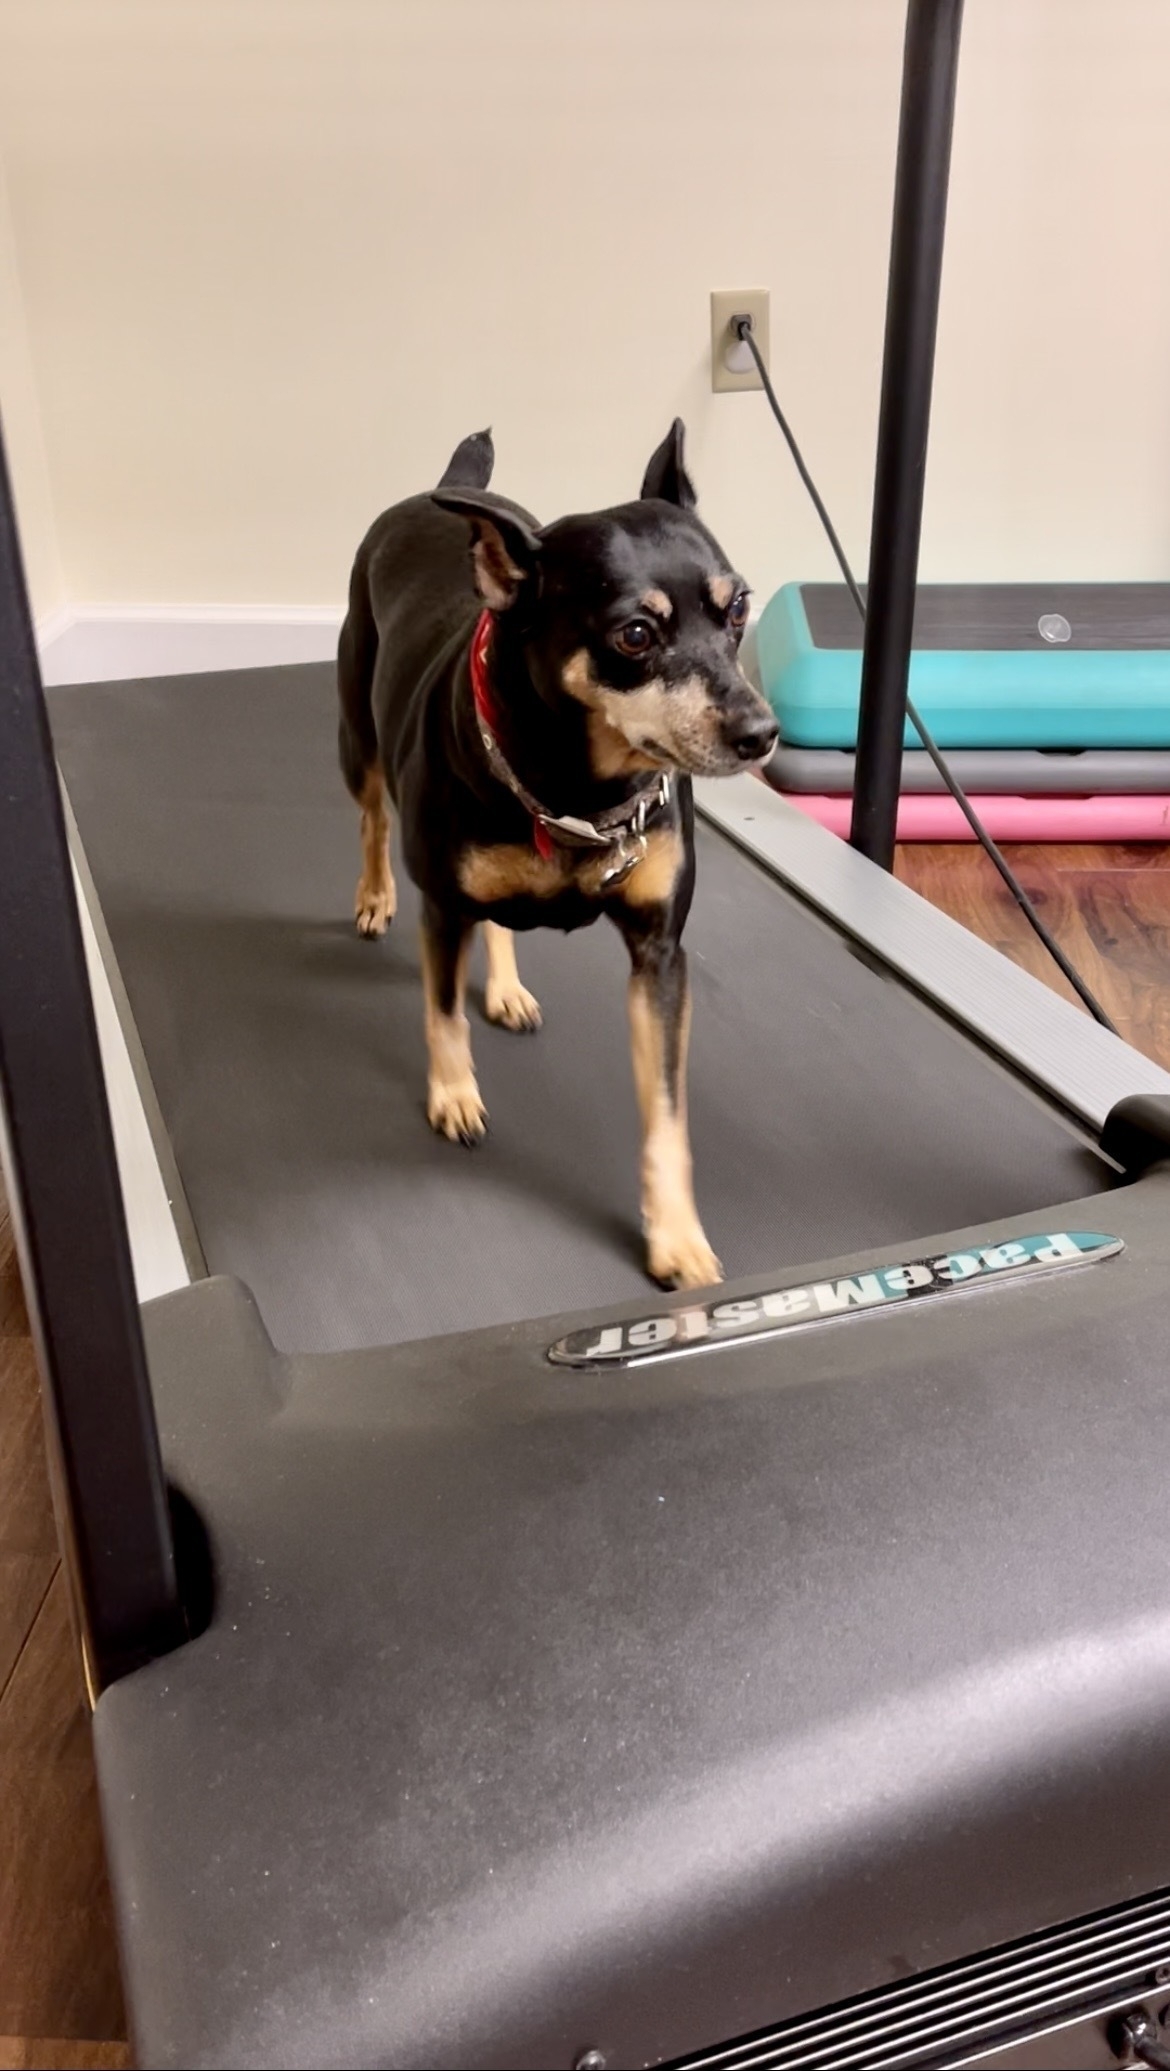 Miniature Pinscher dog walking on a treadmill